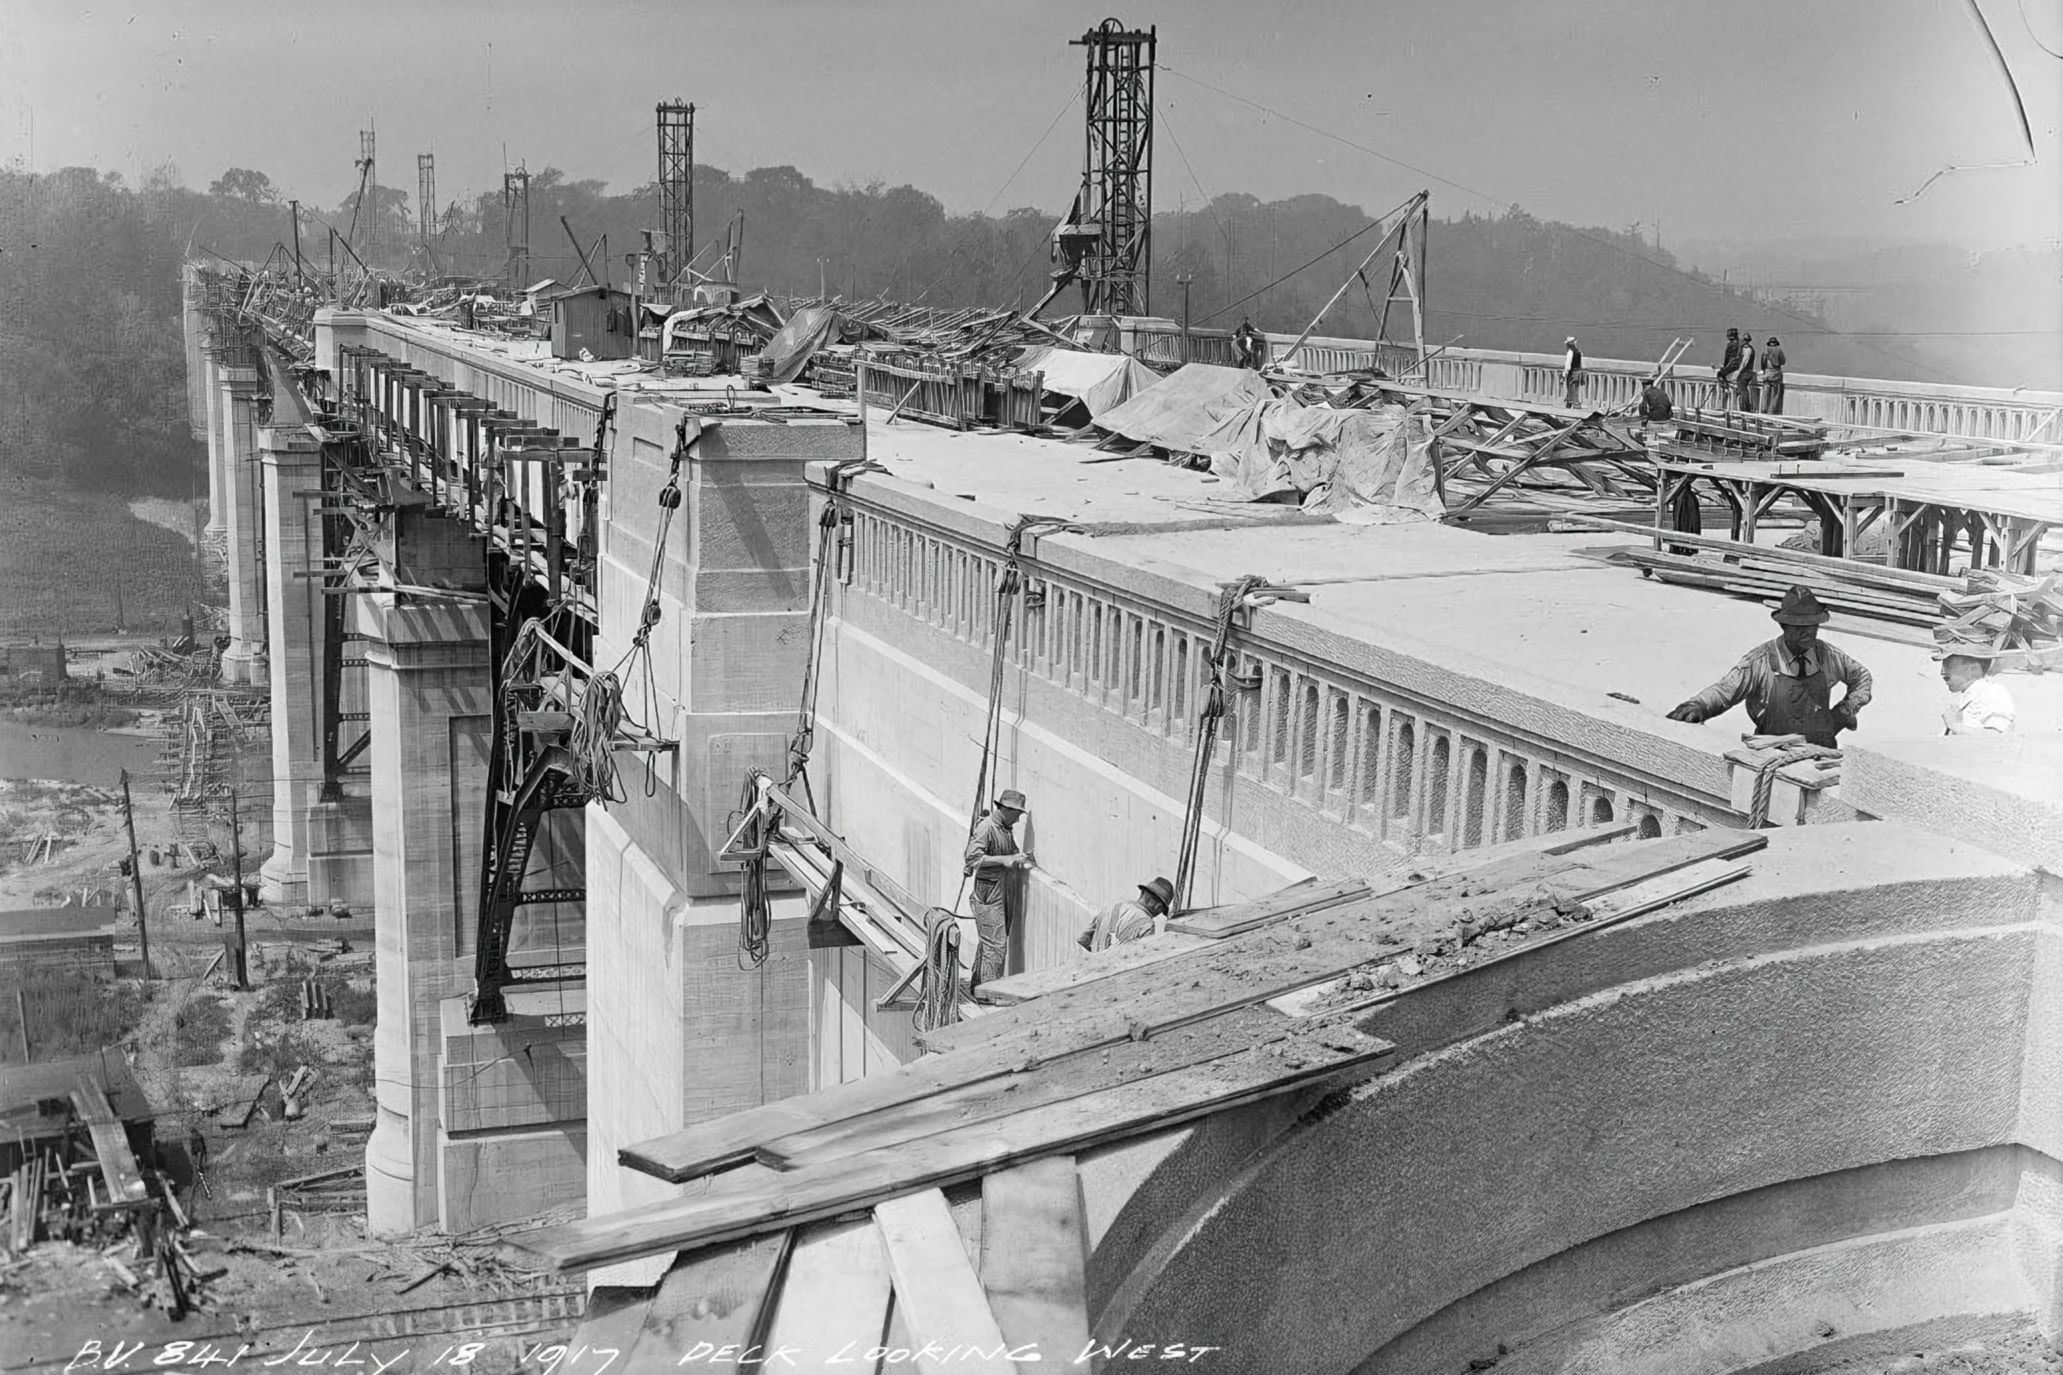 Bloor viaduct under construction